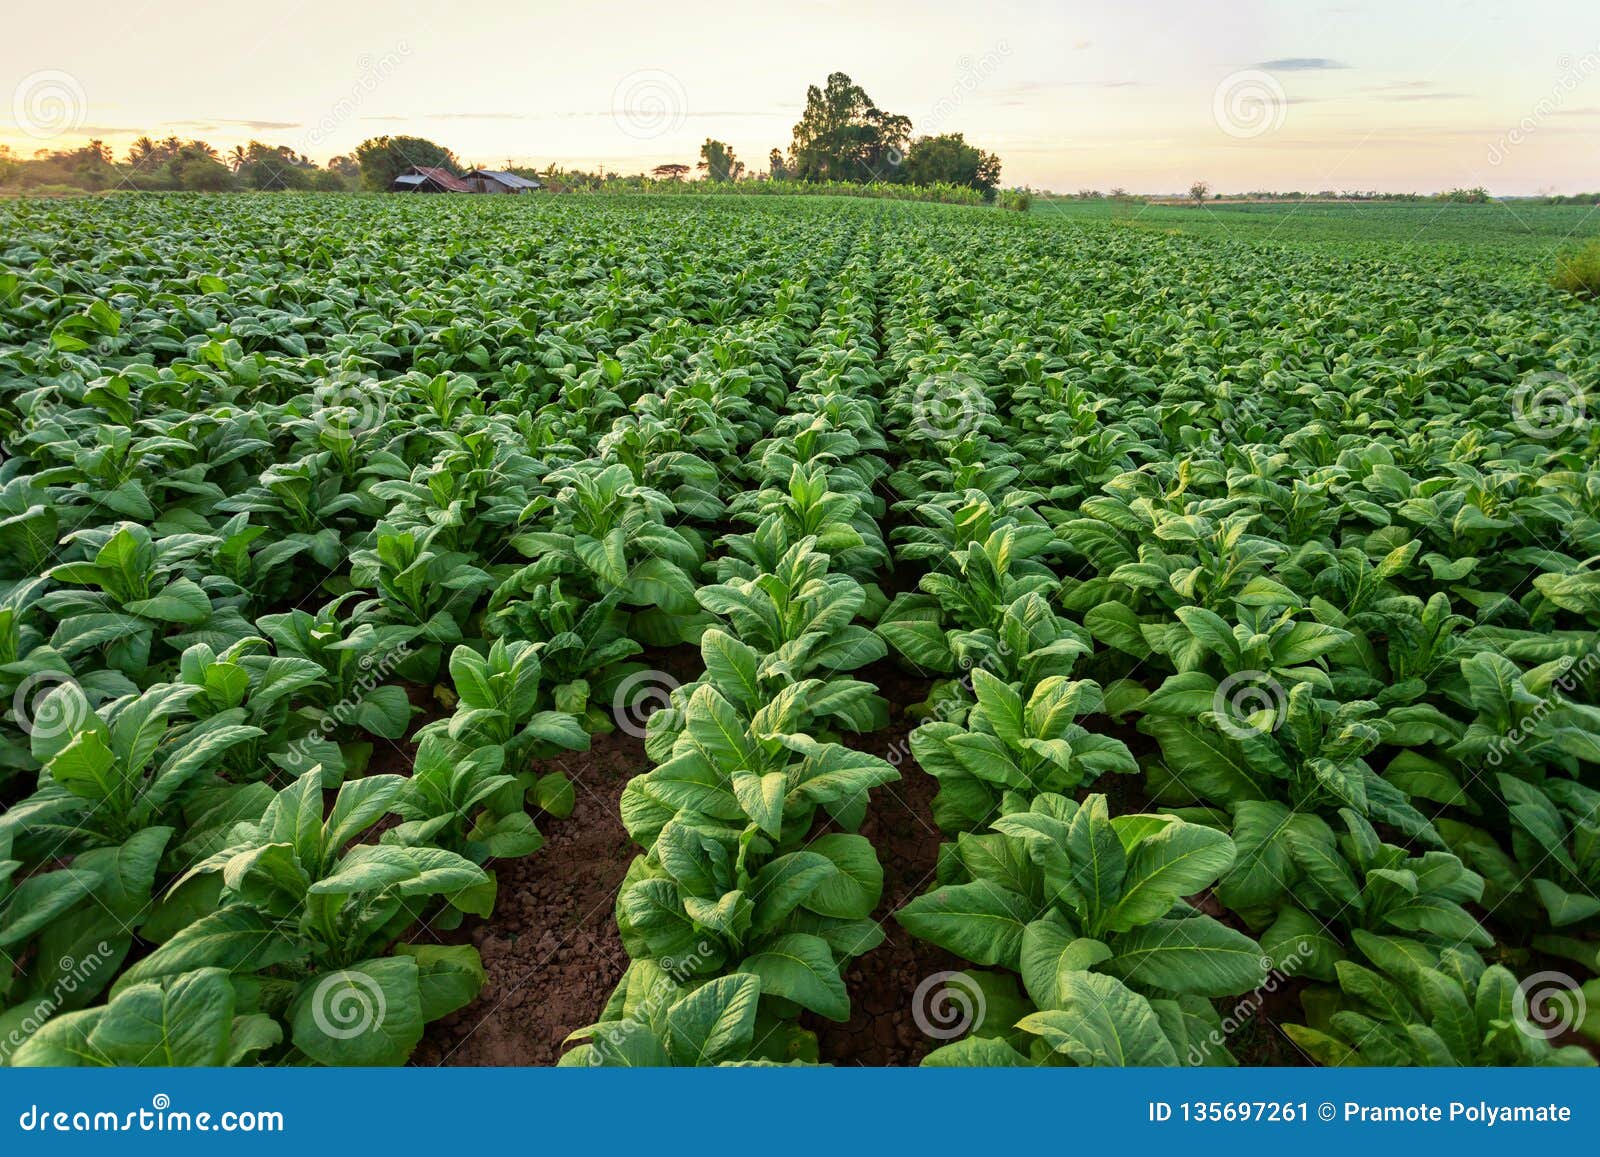 tobacco field, tobacco big leaf crops growing in tobacco plantation field